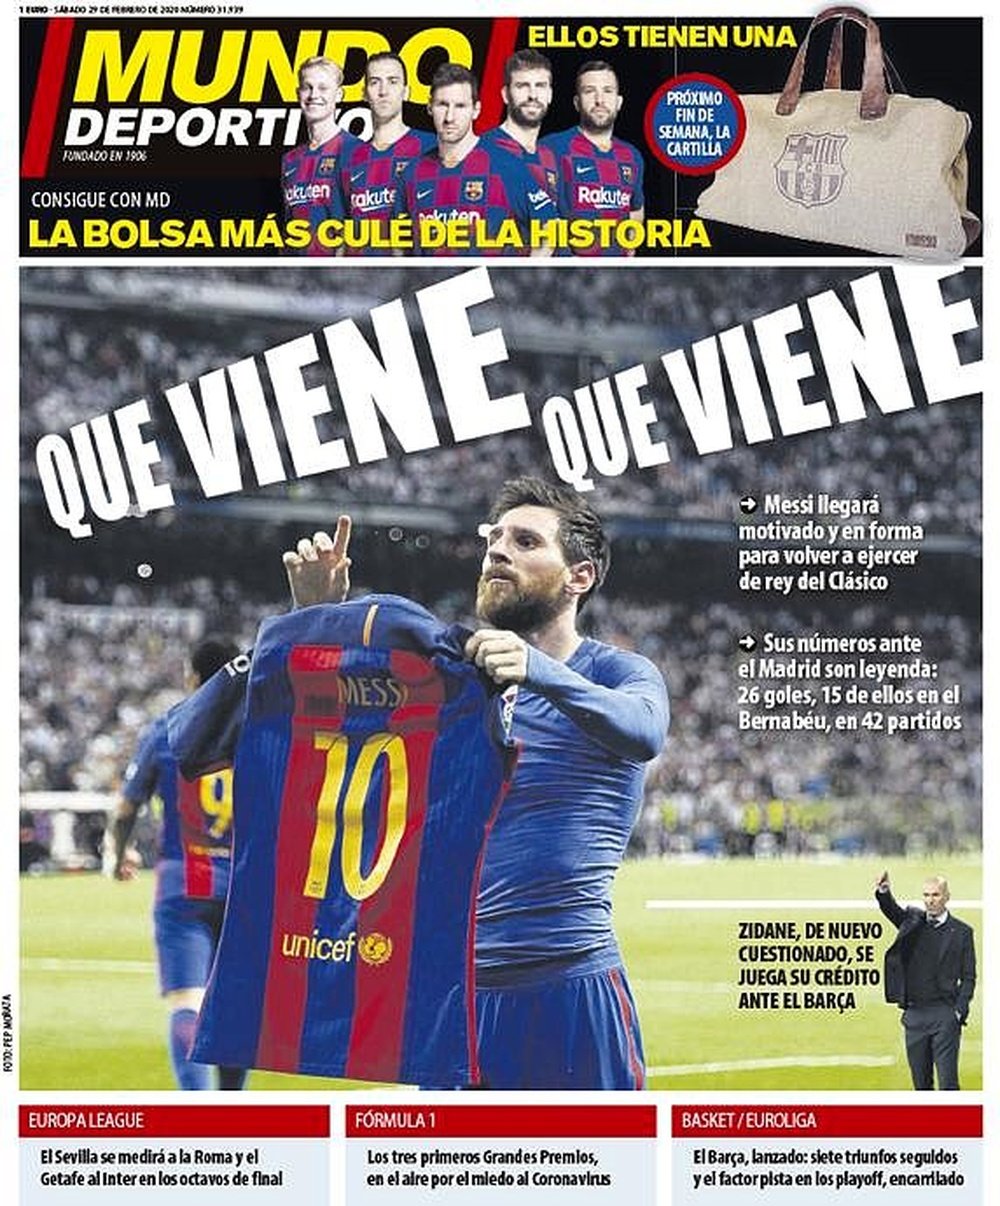 Les Unes des journaux sportifs en Espagne du 29 février 2020. MundoDeportivo